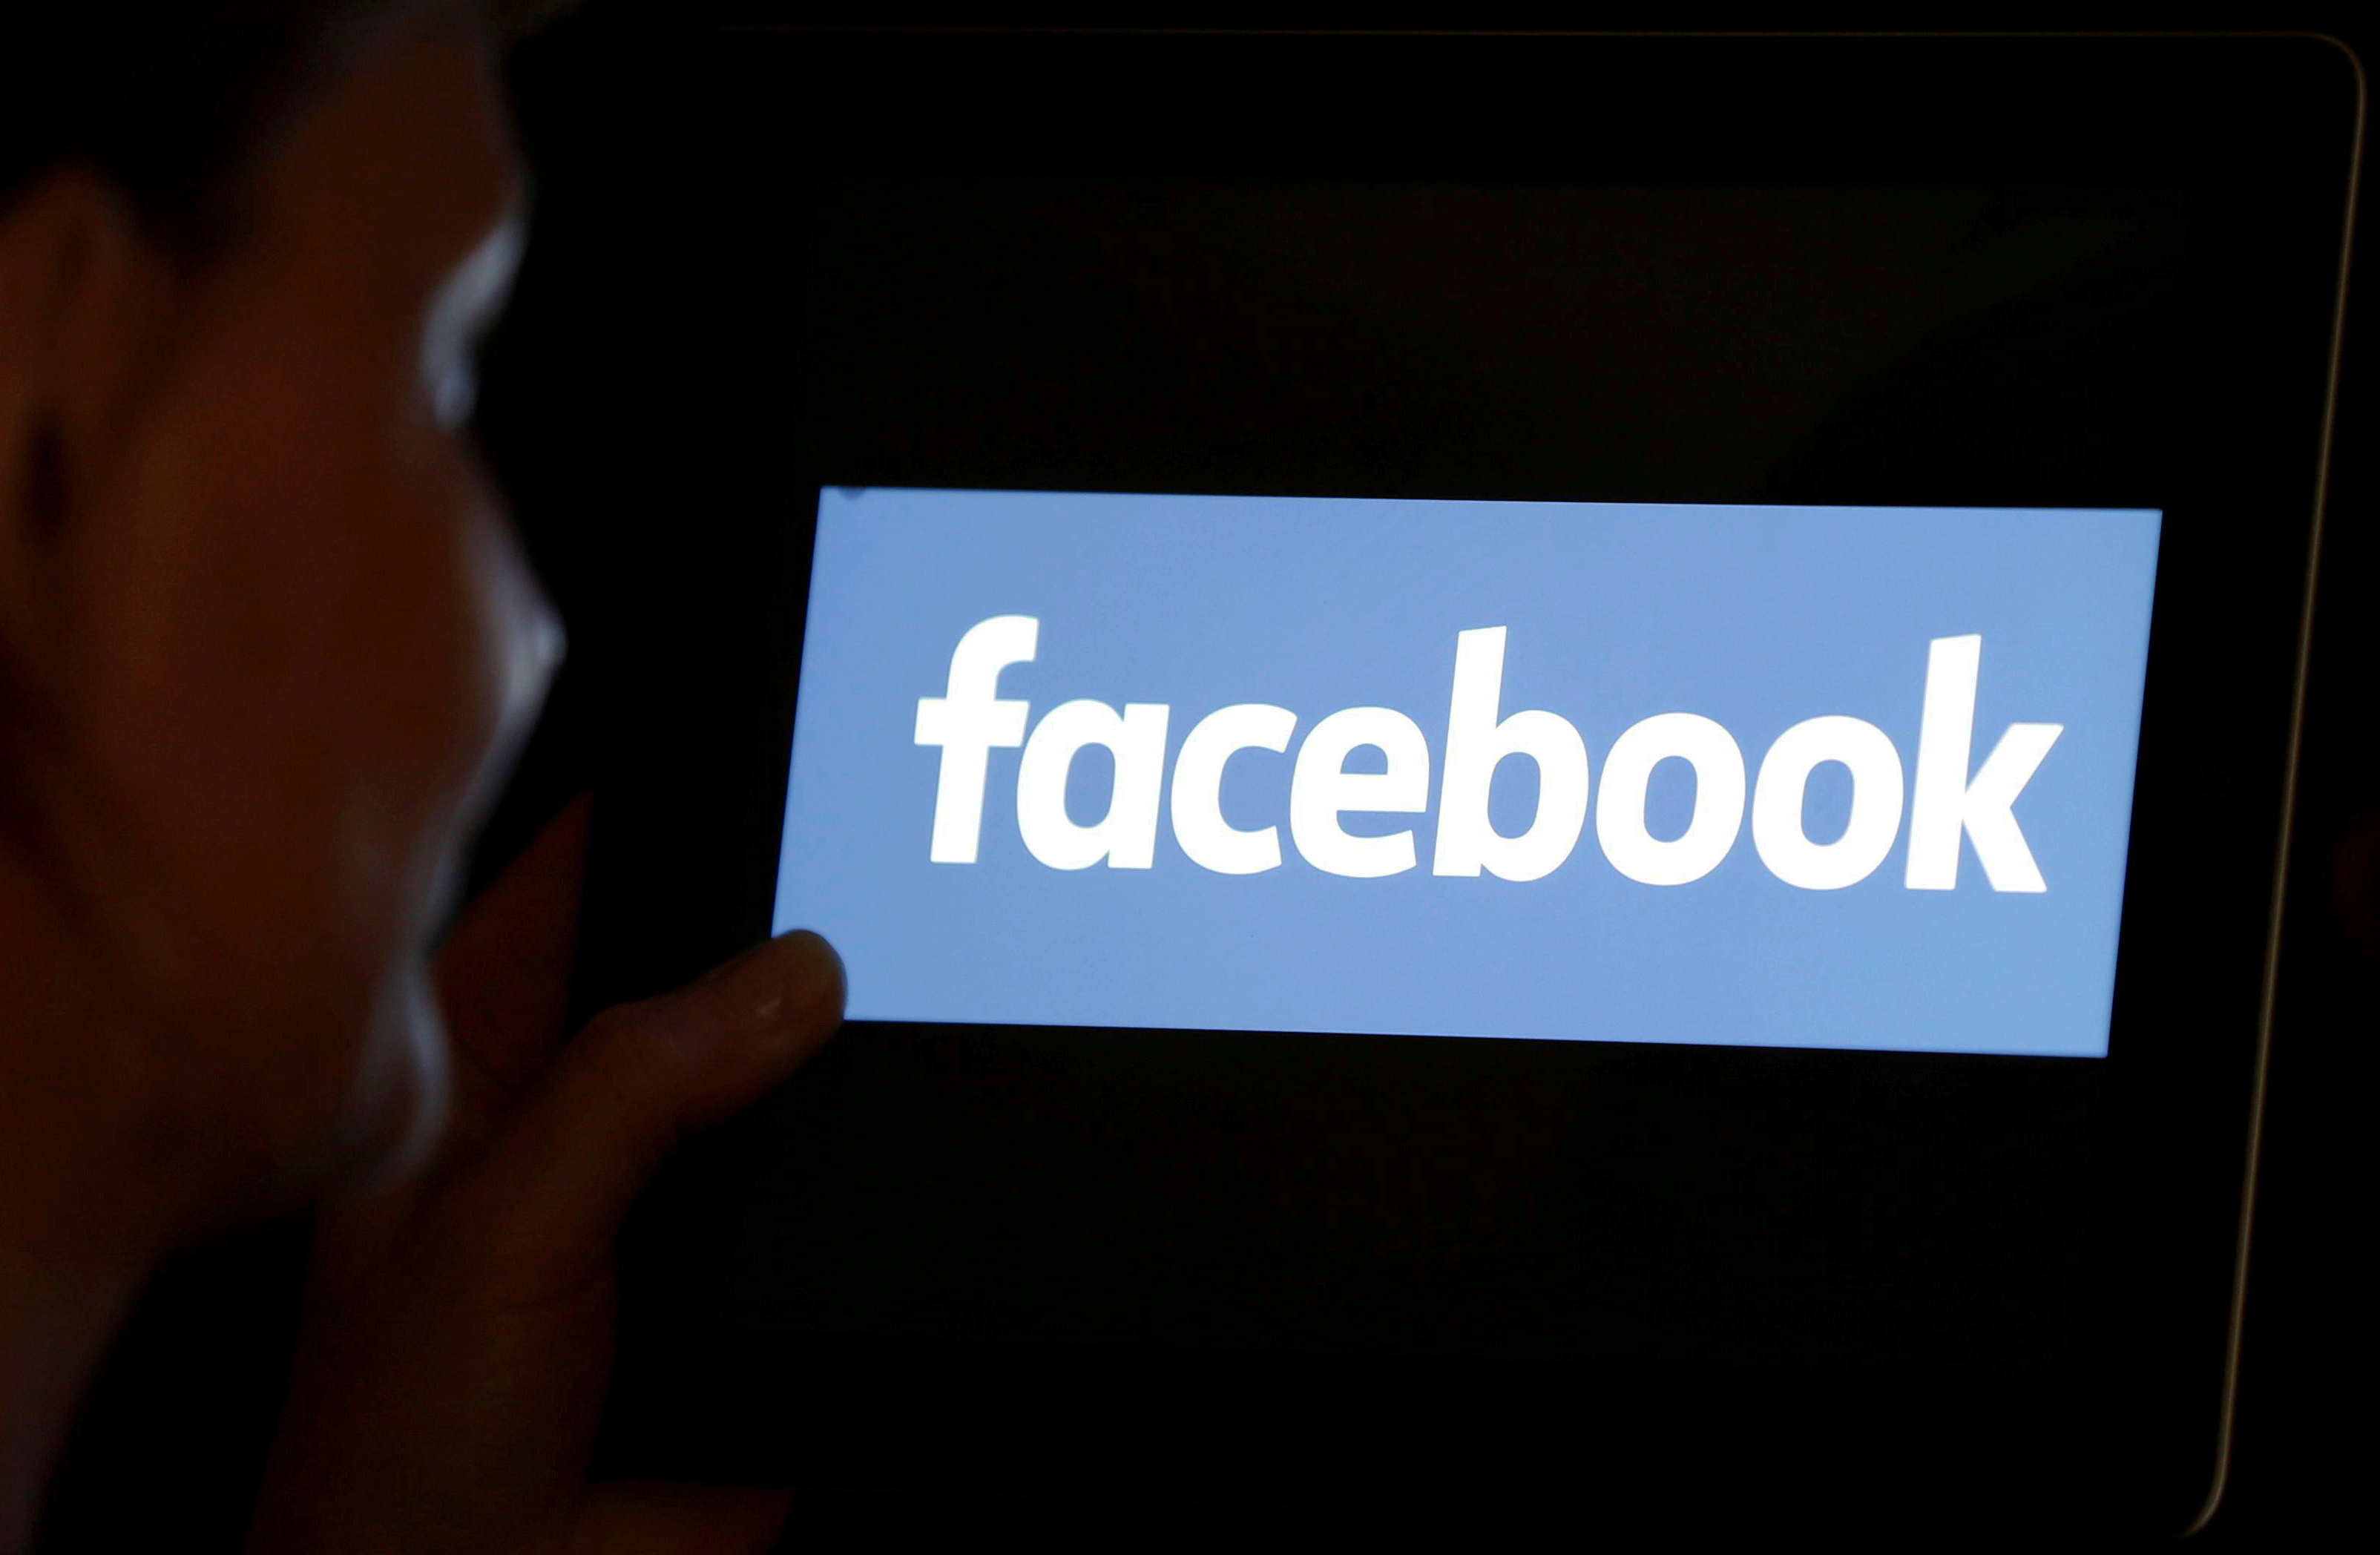 Facebook pide a los Estados que regulen mejor a los gigantes digitales